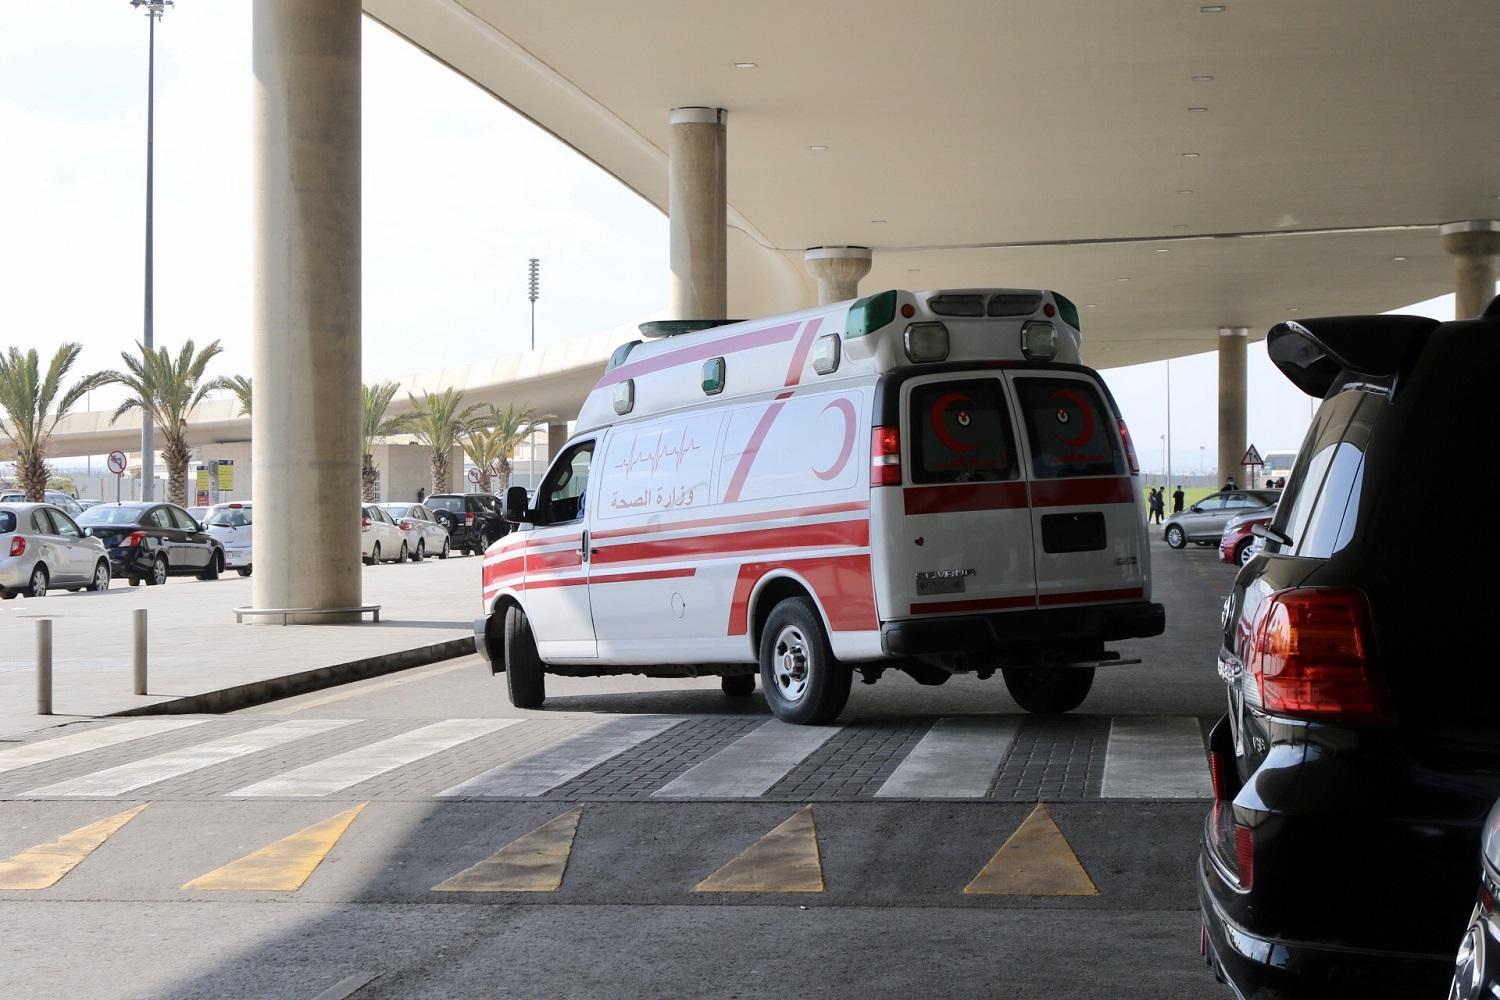 سيارة إسعاف في مطار الملكة علياء الدولي، 16 آذار/مارس 2020. (صلاح ملكاوي/ المملكة)